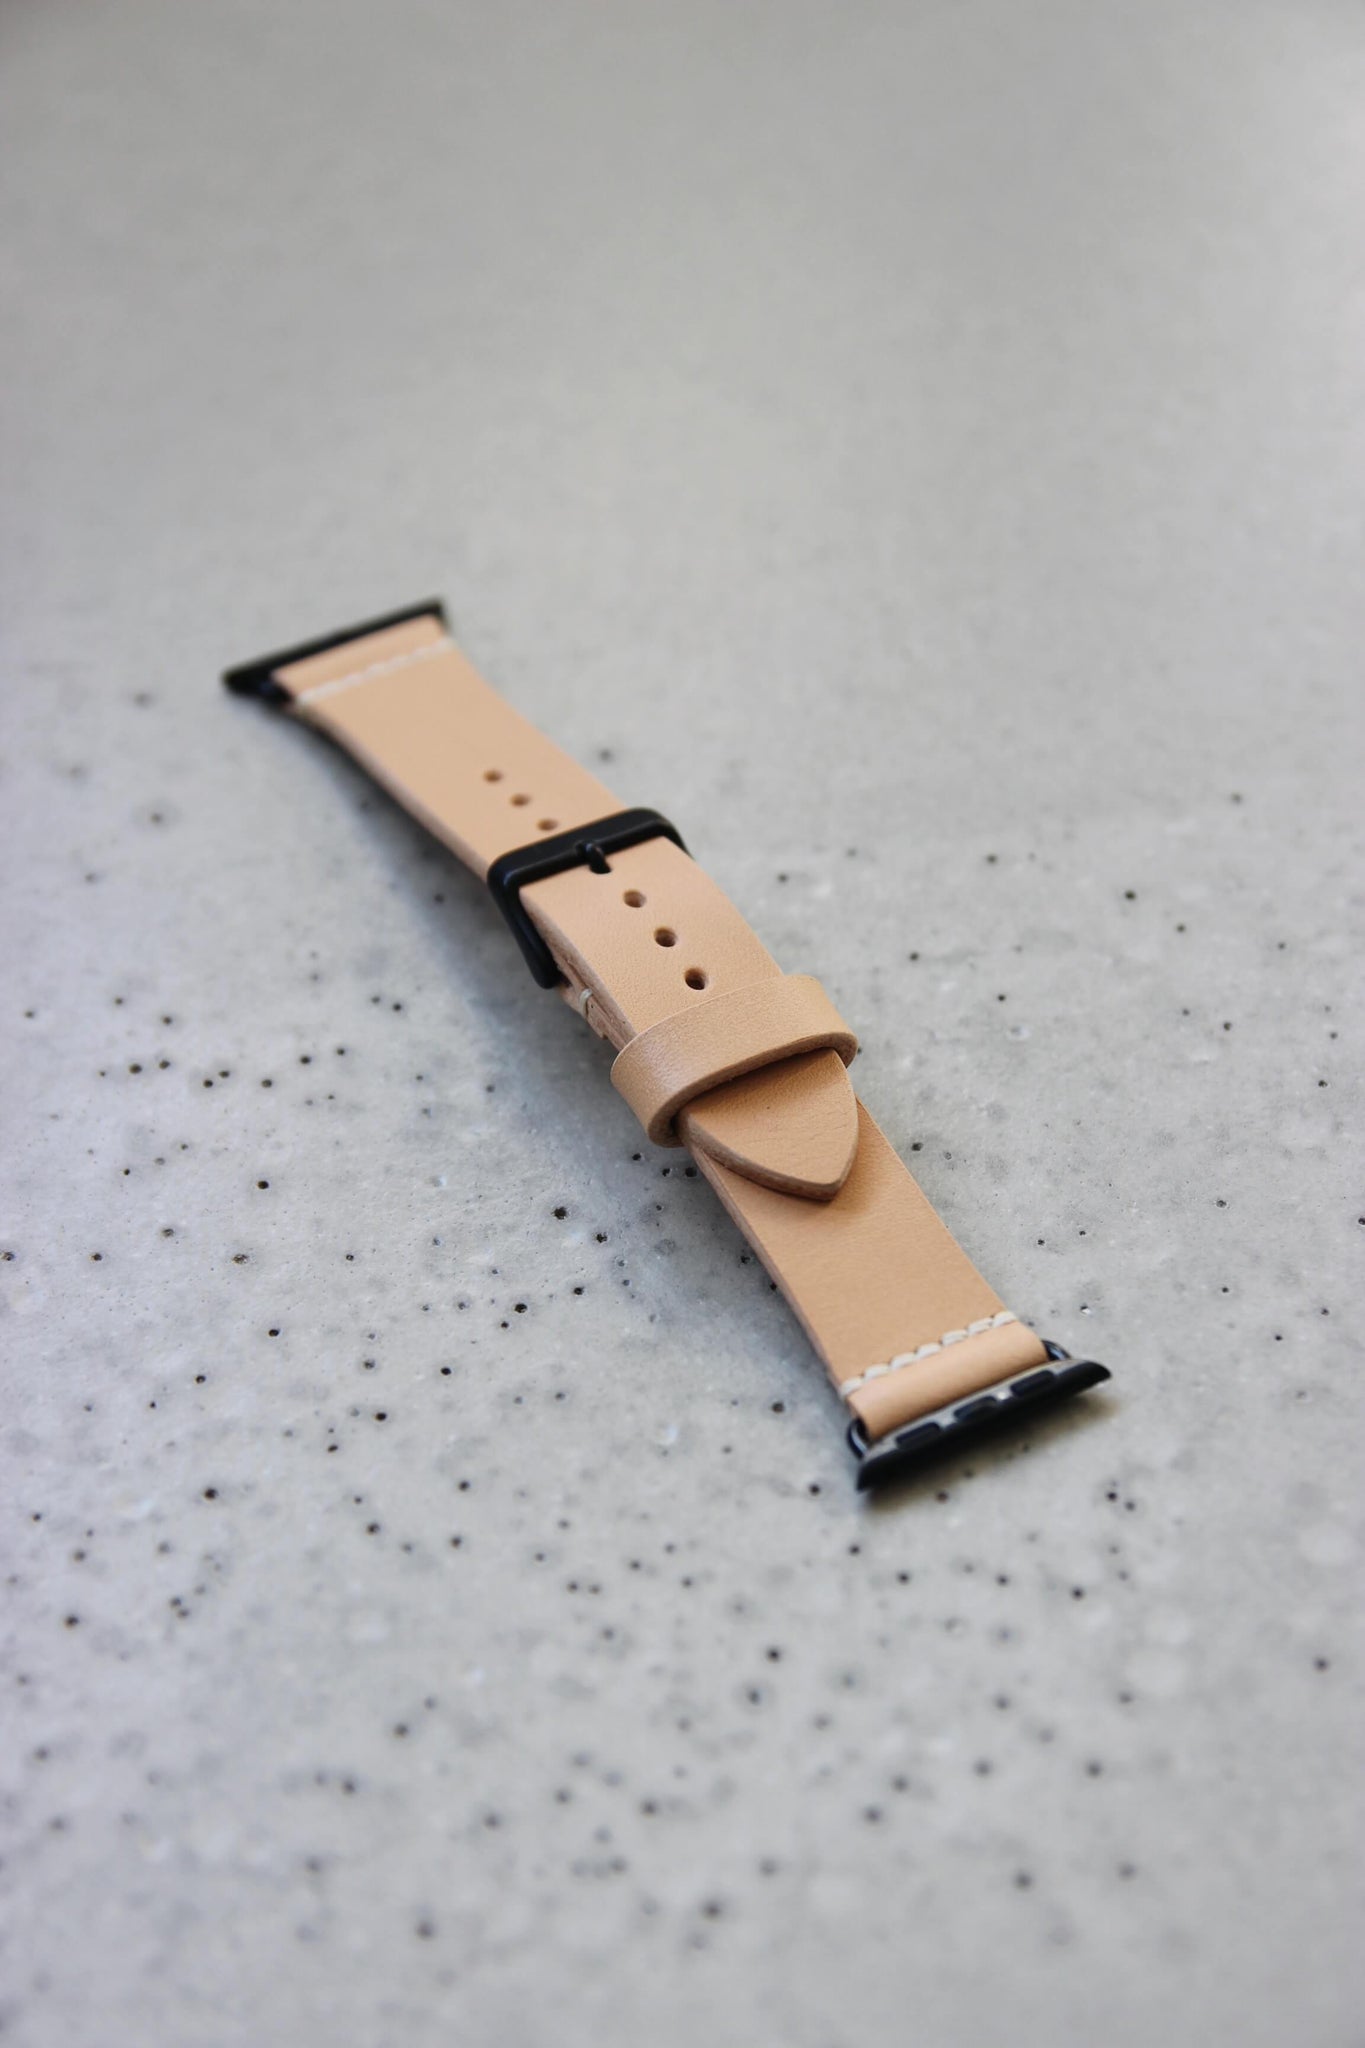 Apple Watch Lederband in Natural auf einem Betonboden liegend.